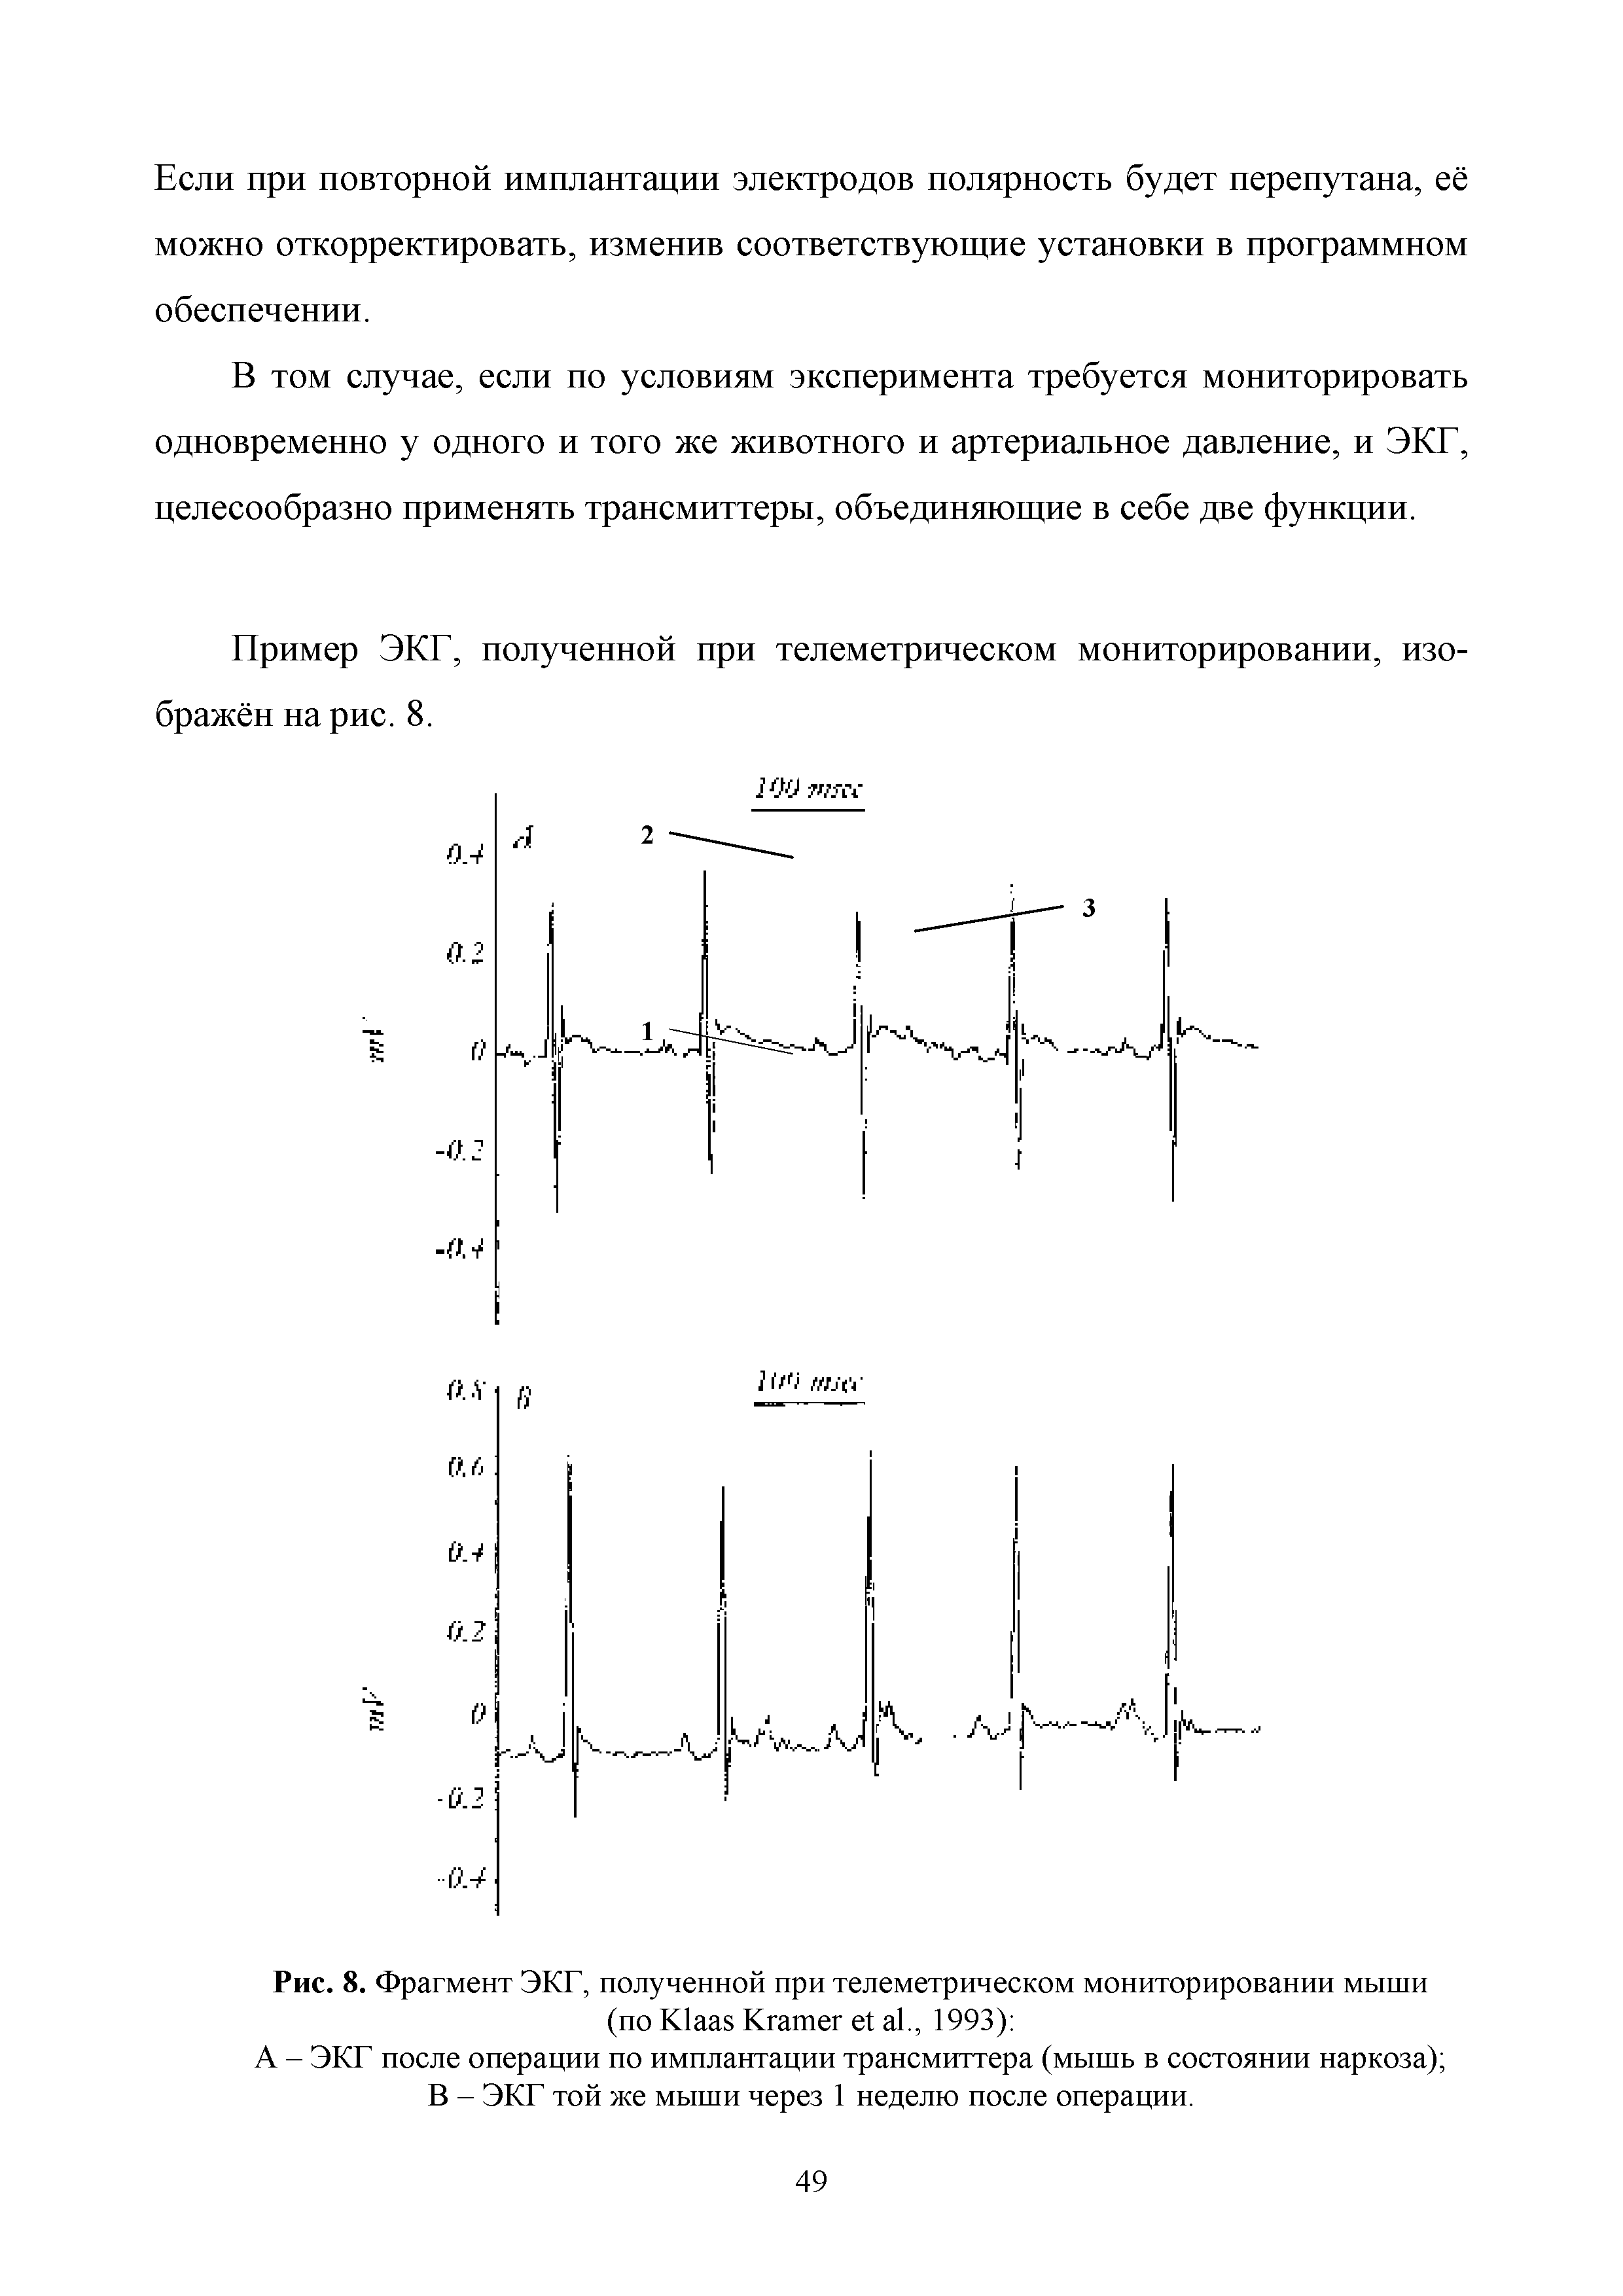 Рис. 8. Фрагмент ЭКГ, полученной при телеметрическом мониторировании мыши (по K K ., 1993) ...